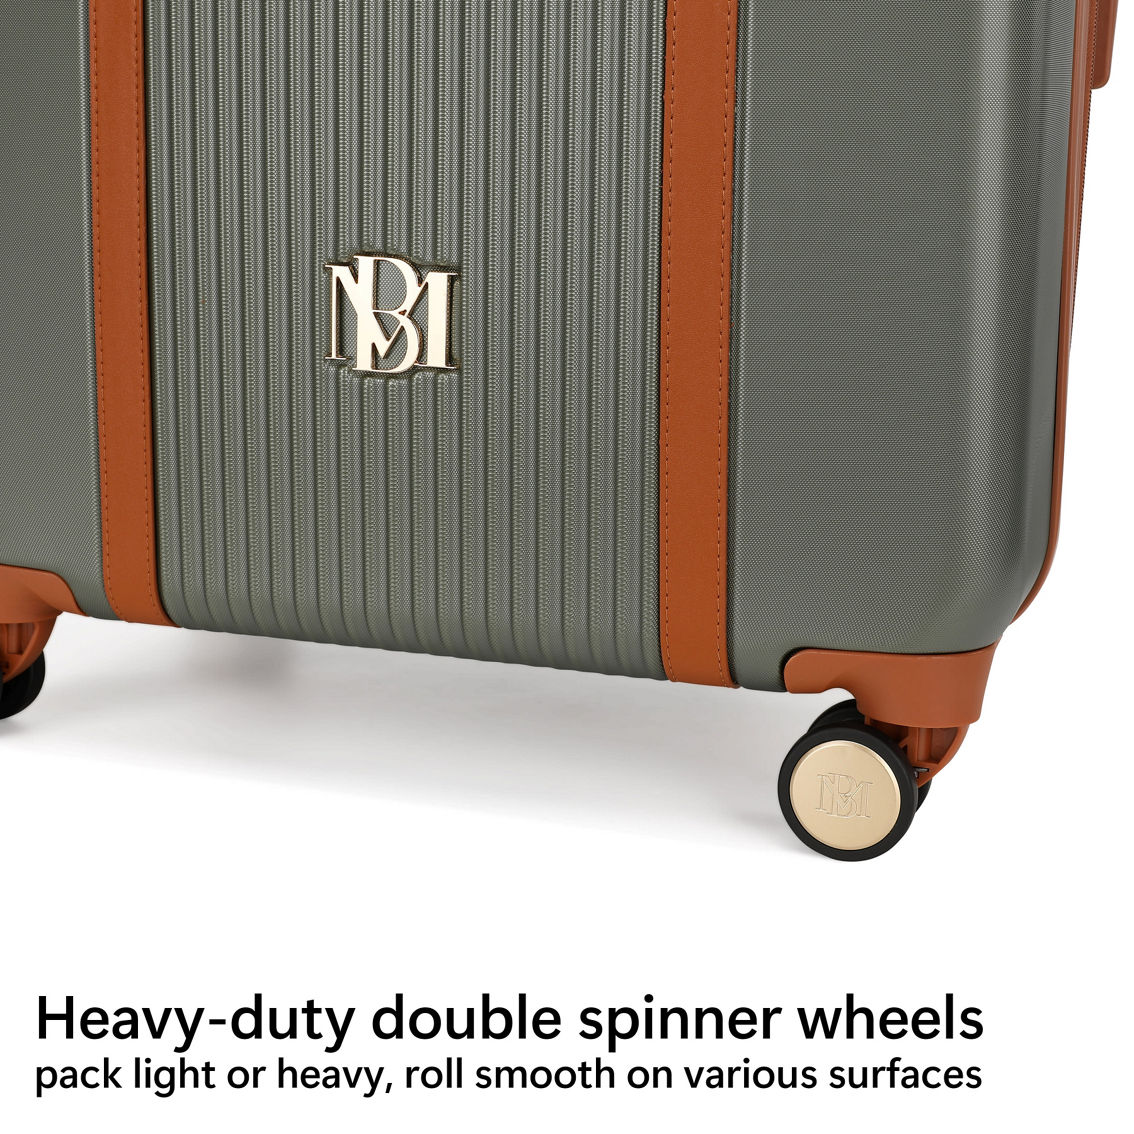 BADGLEY MISCHKA Mia 3 Piece Expandable Retro Luggage Set - Image 4 of 5